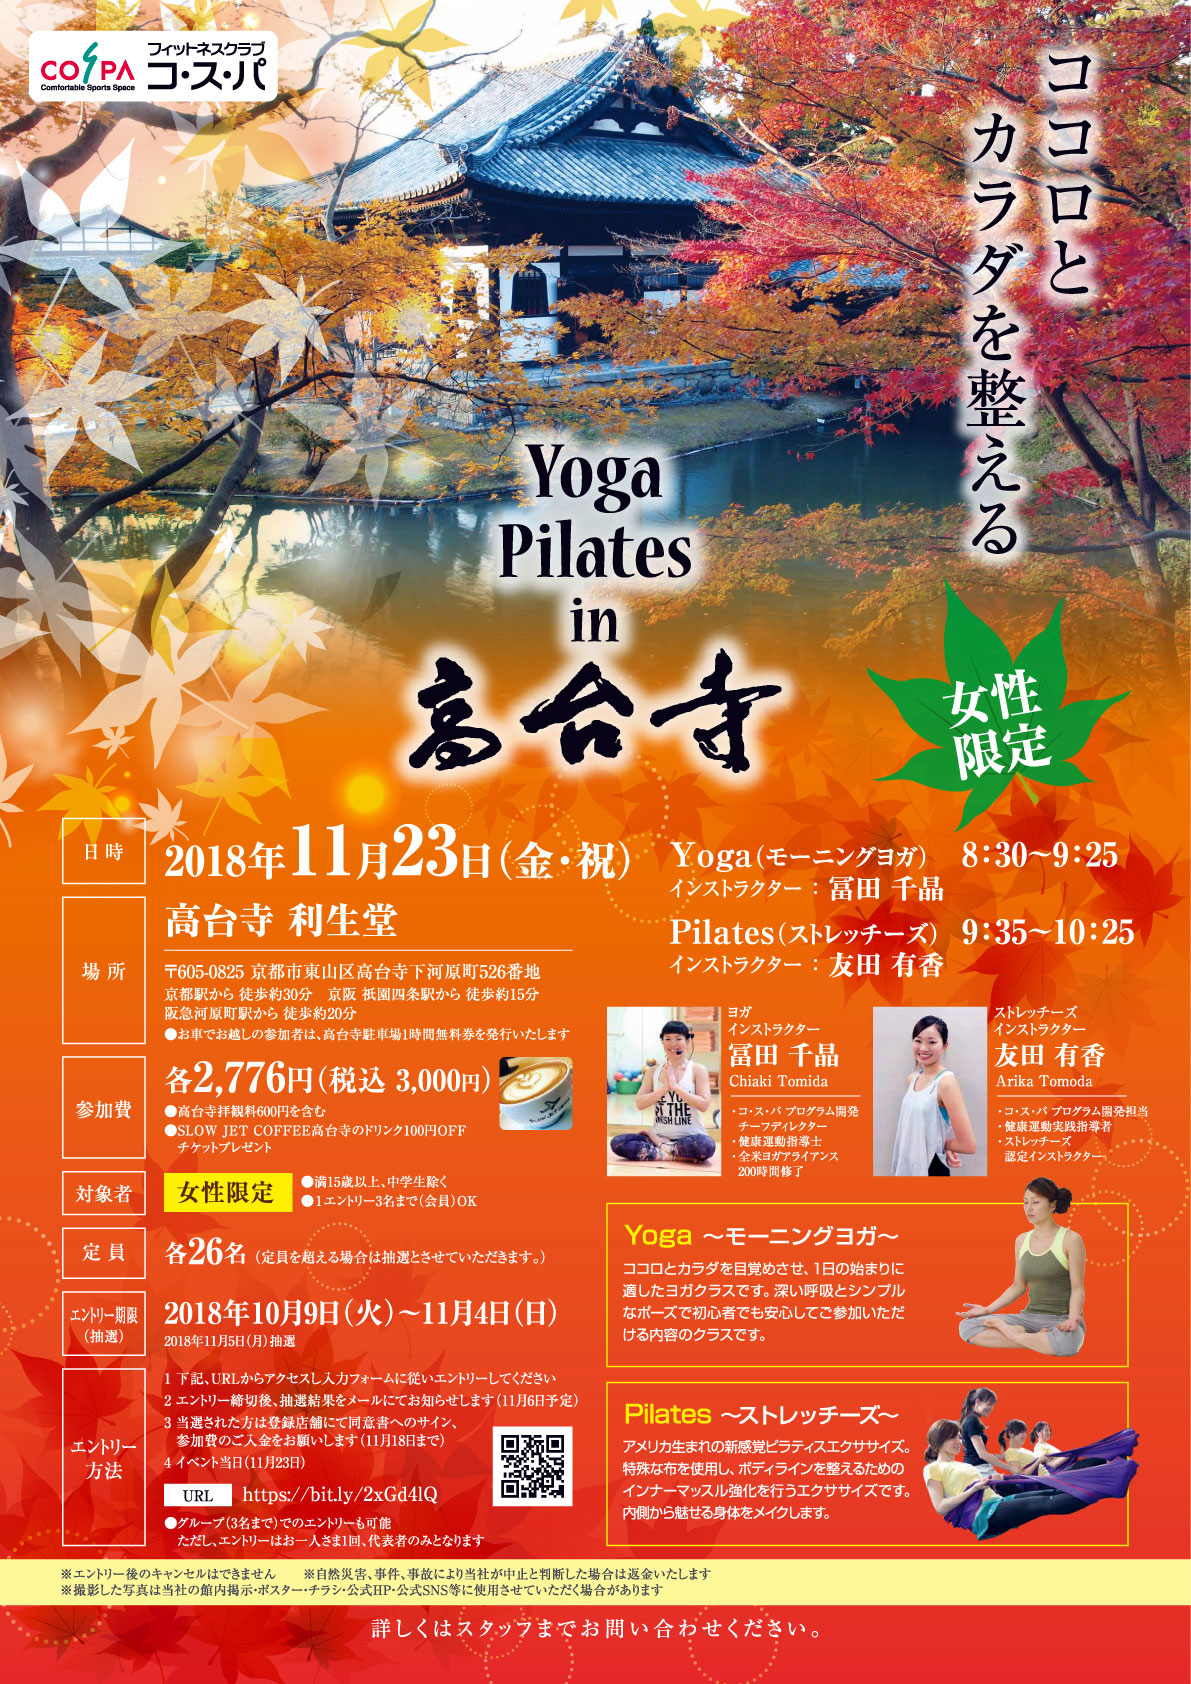 Yoga(モーニングヨガ)・Pilates(ストレッチーズ) in 高台寺